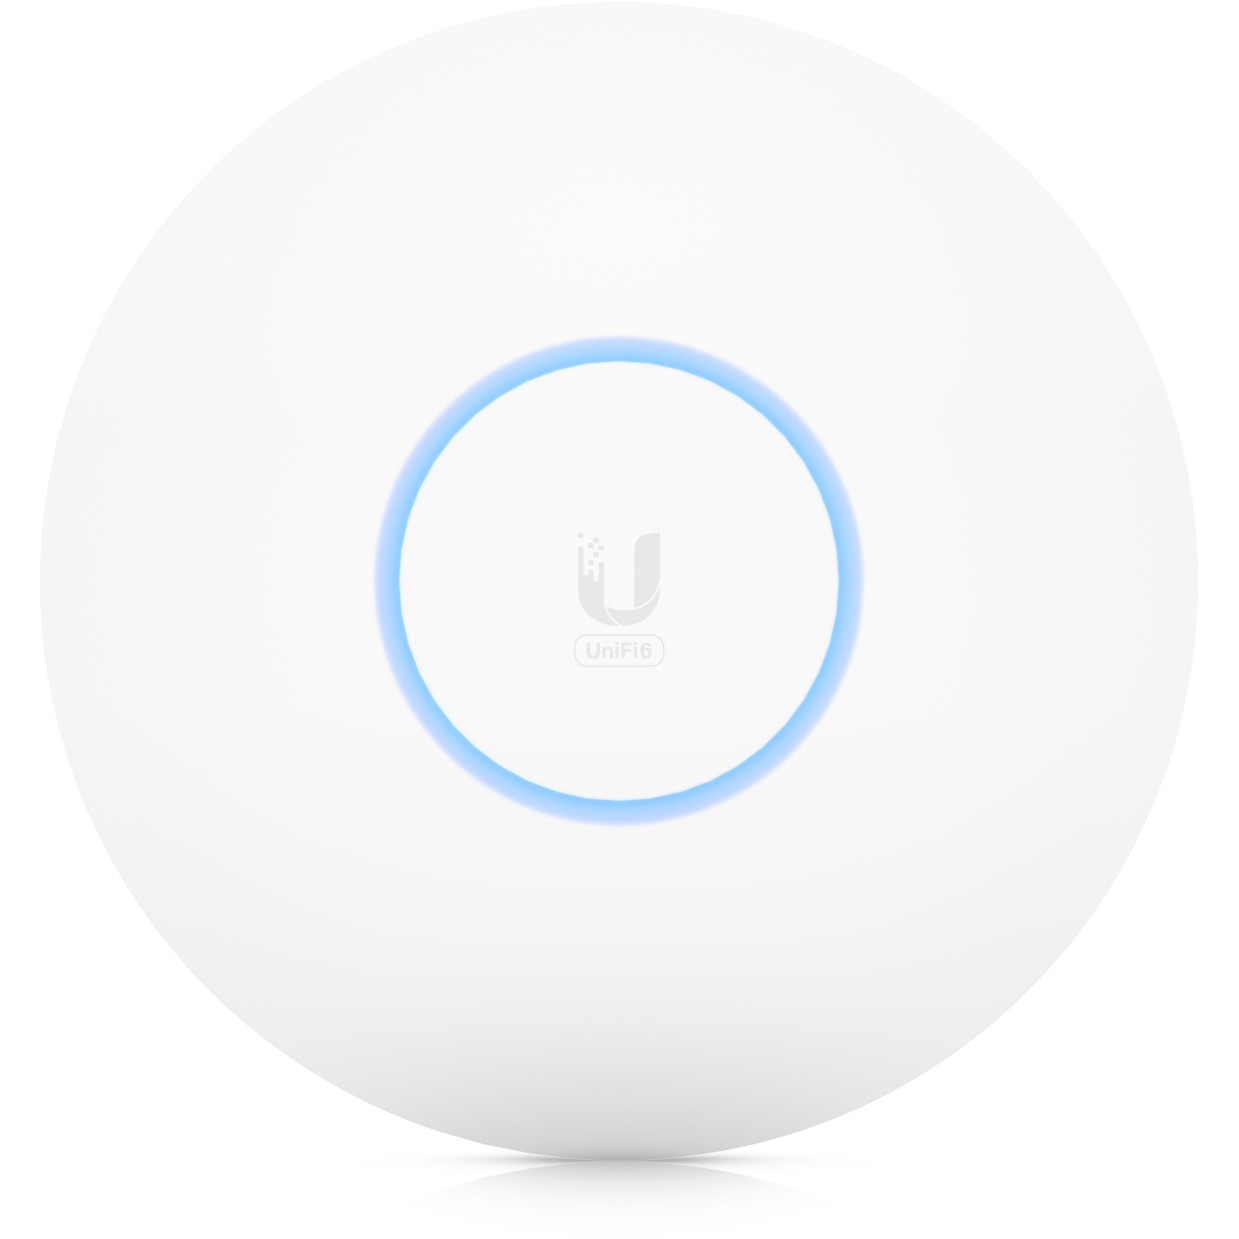 Ubiquiti U6-PRO wireless access point - U6-Pro